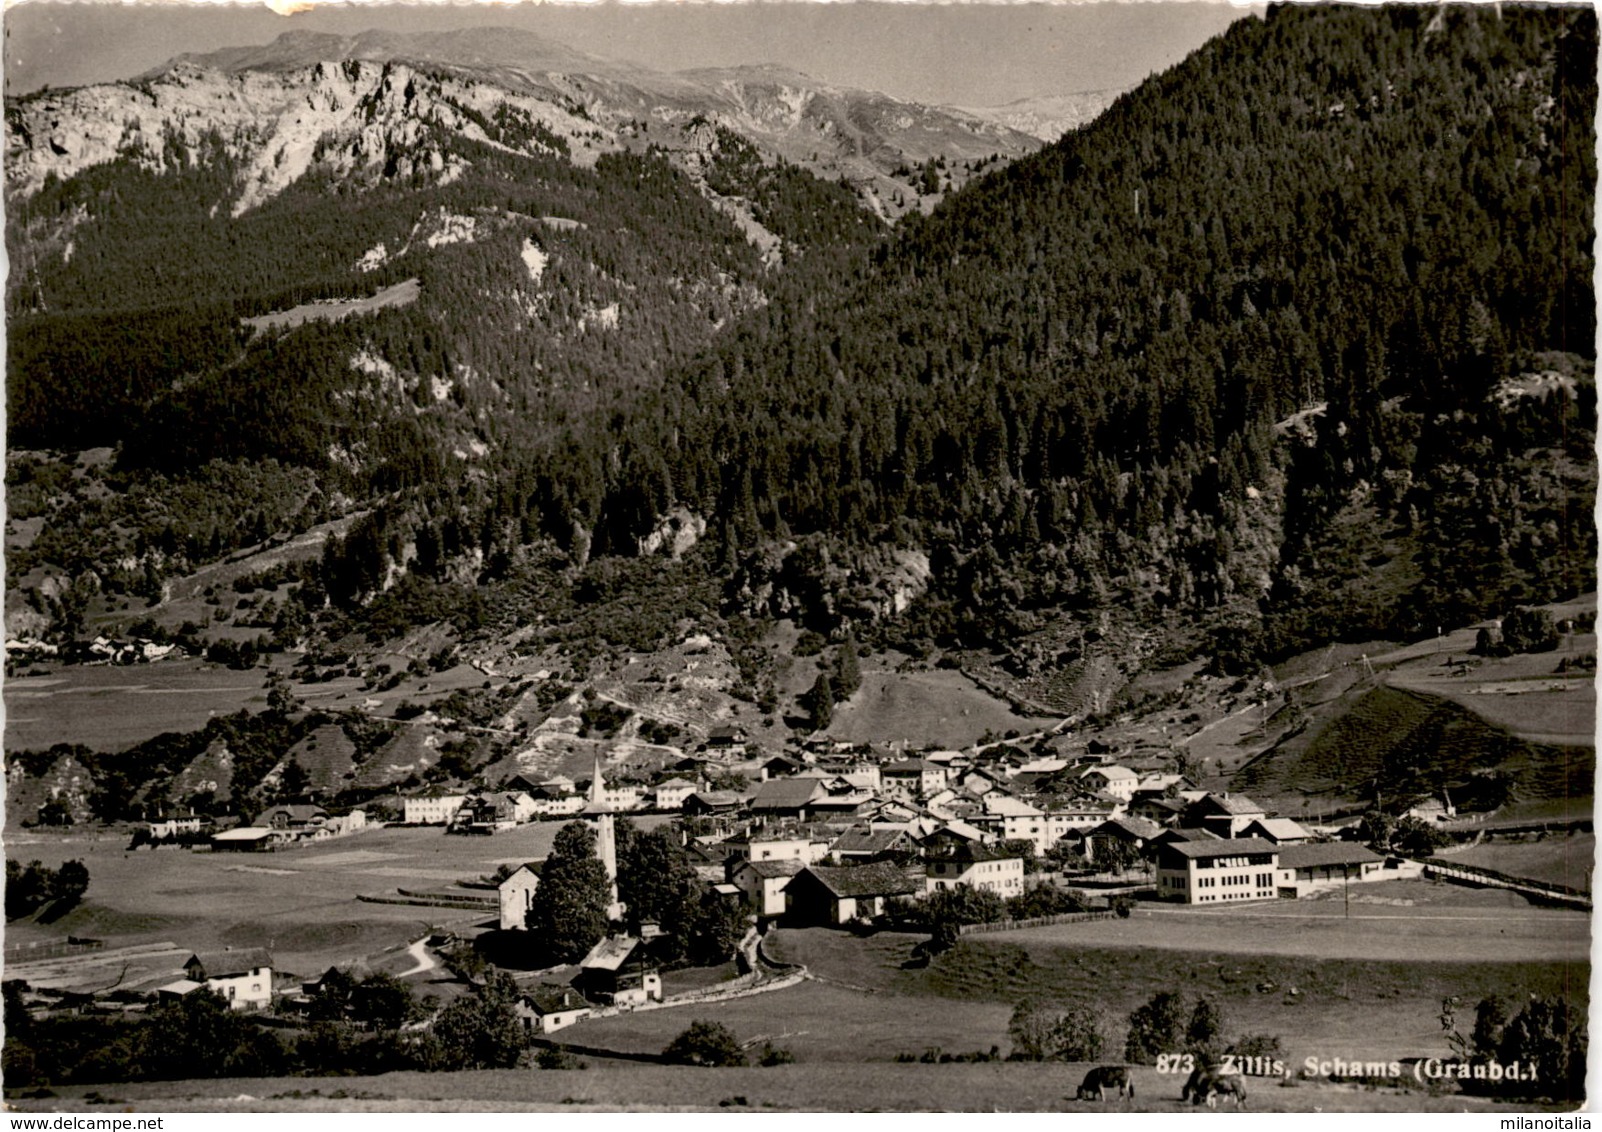 Zillis, Schams (Graubd.) (873) * 28. 11. 1951 - Zillis-Reischen